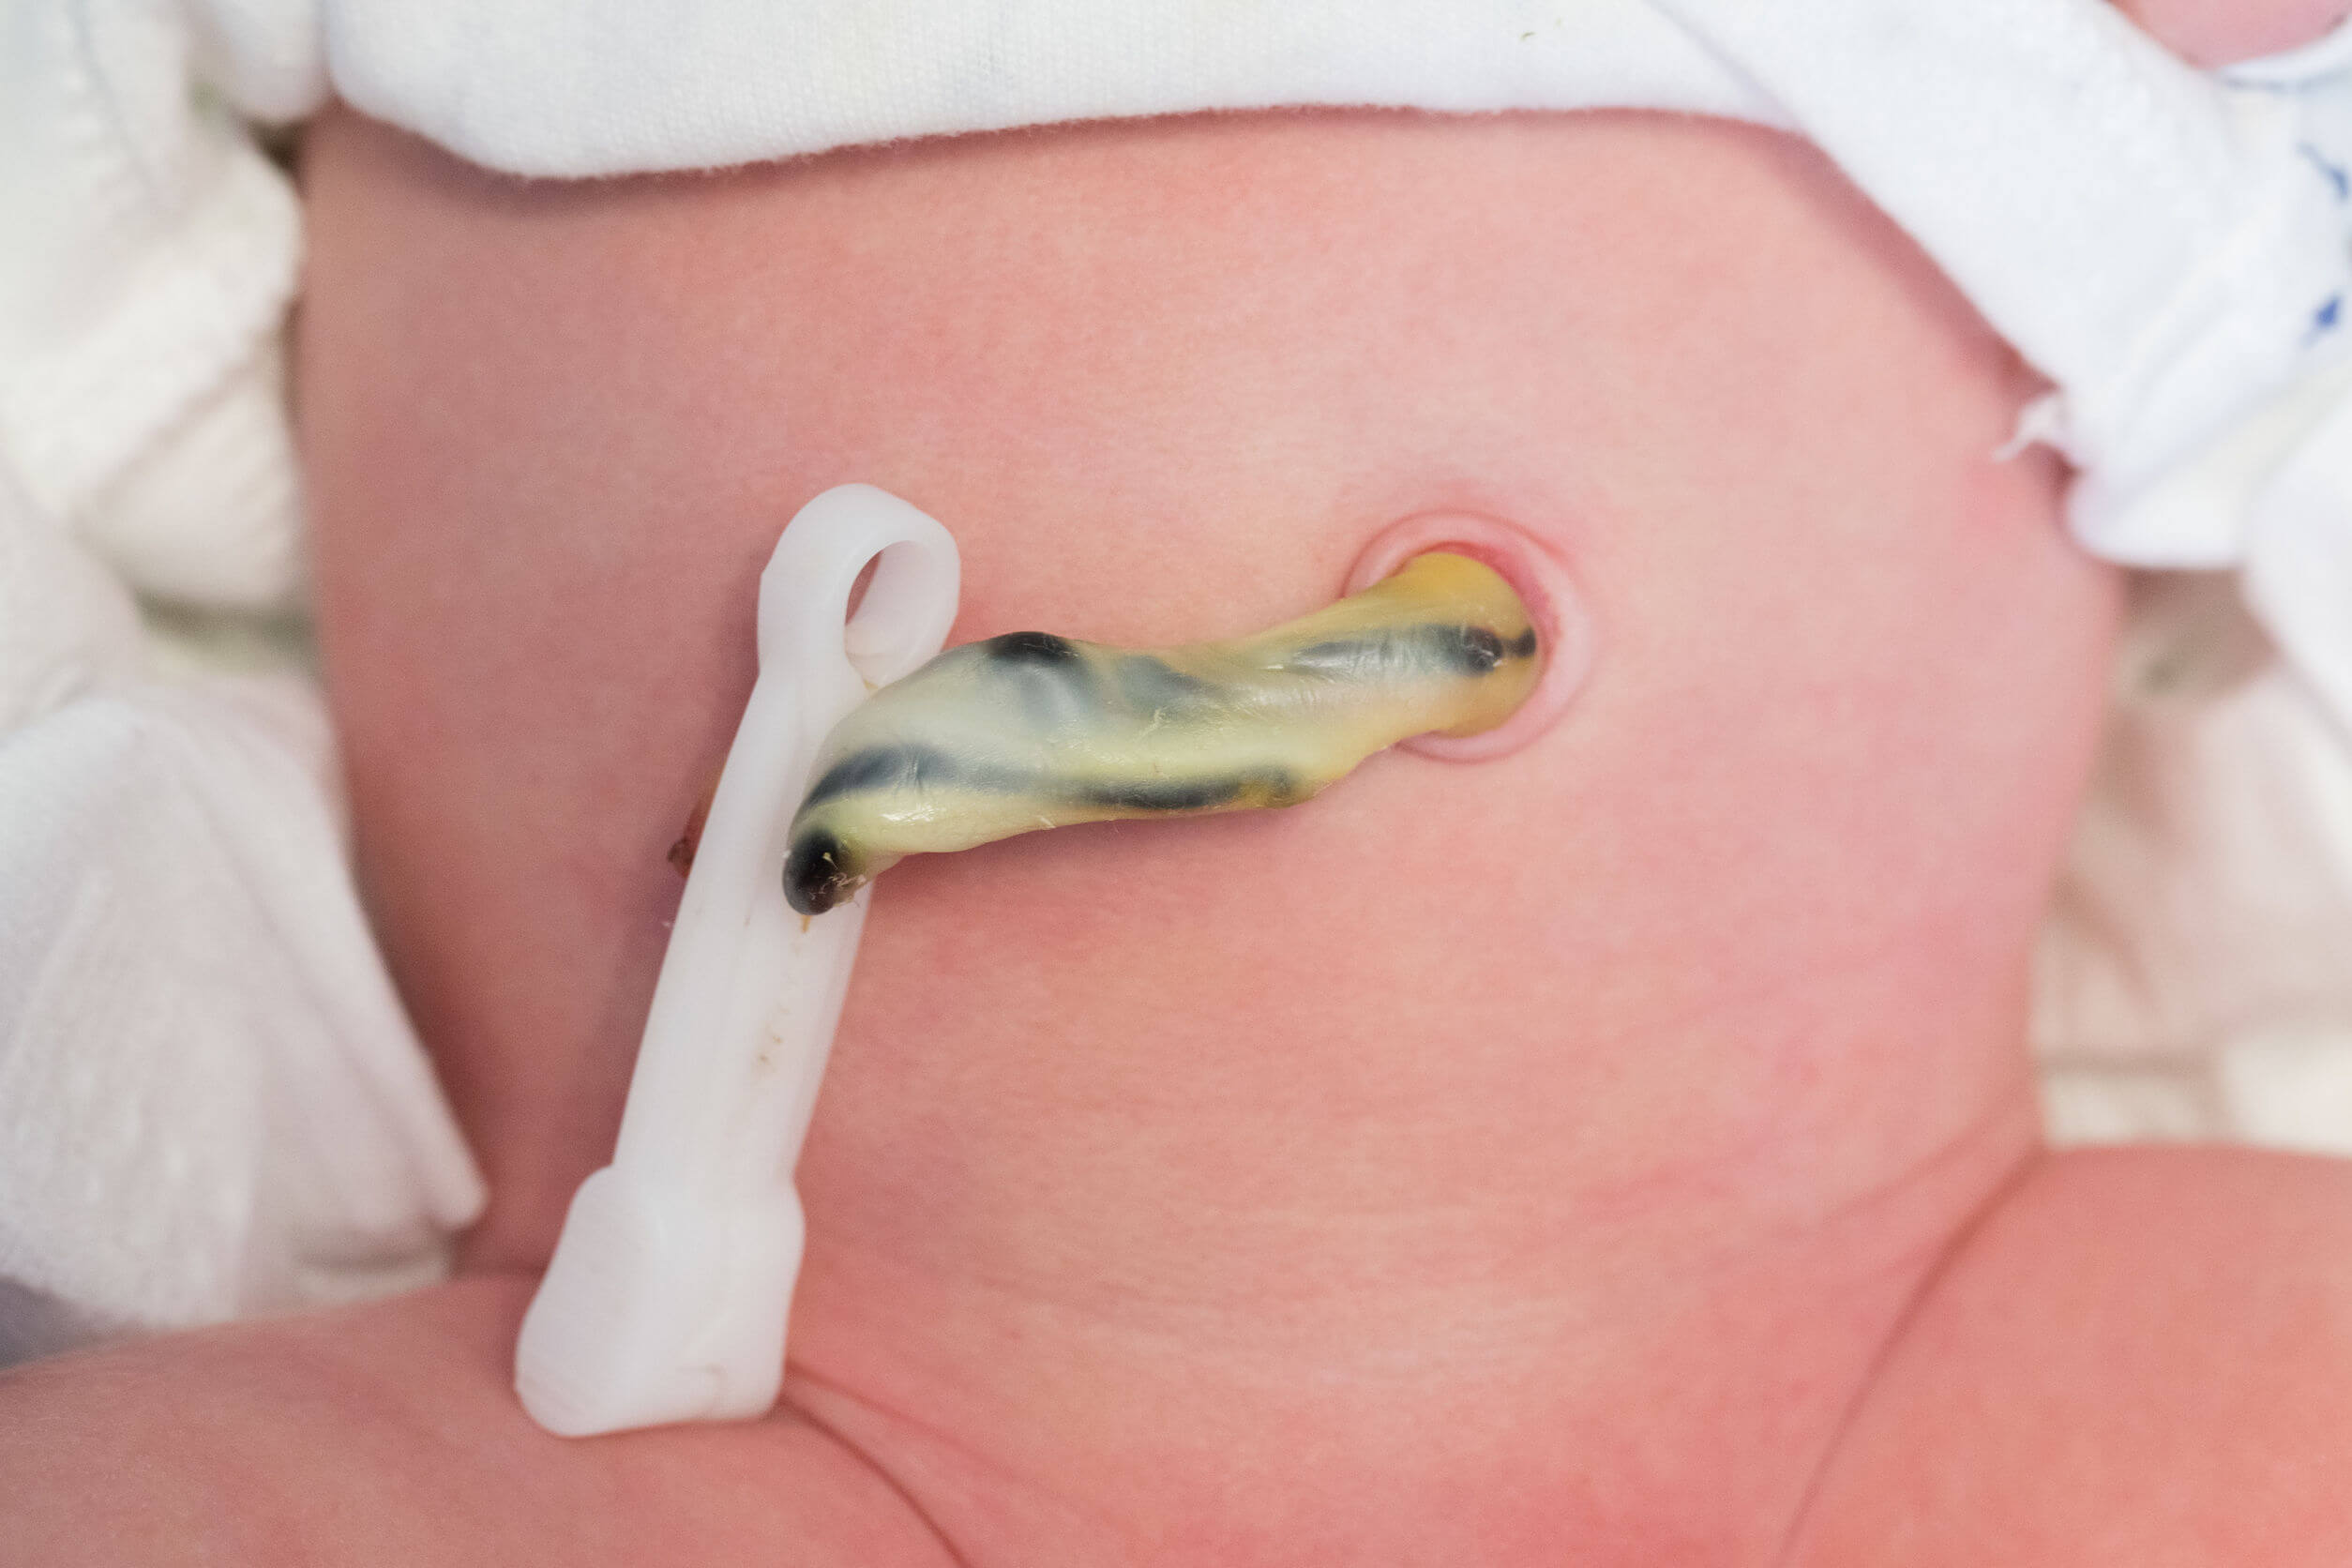 Nombril et cordon ombilical d'un nouveau-né.